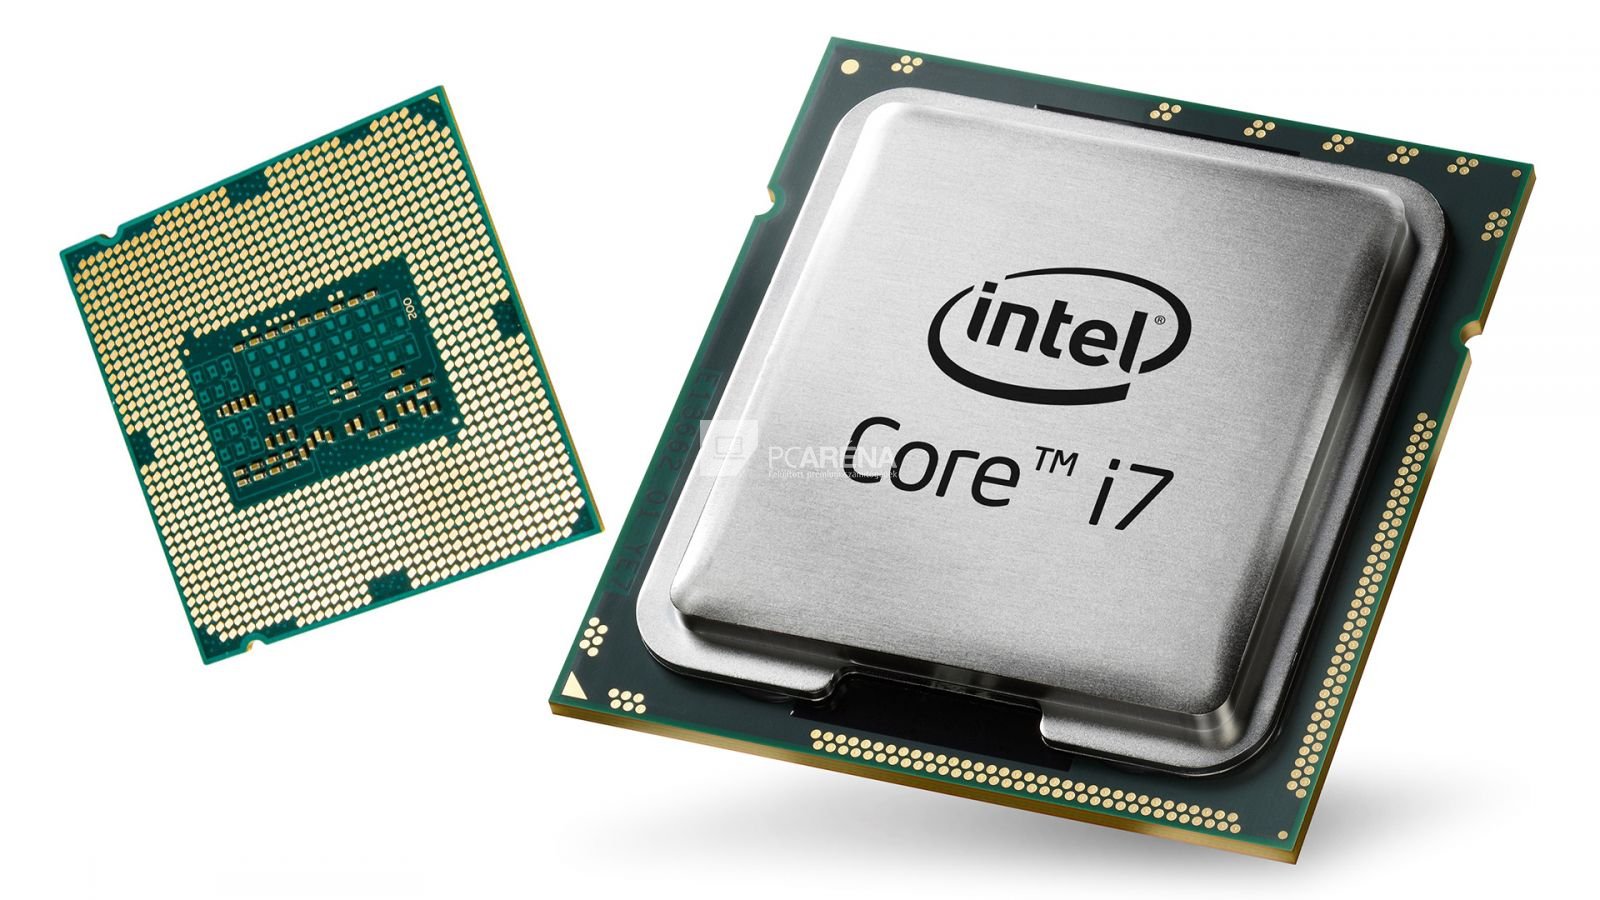 Днс купить i5. Процессор Интел i3. Процессор Intel Core 3. Интер кор 3. I3 процессоры DNS.